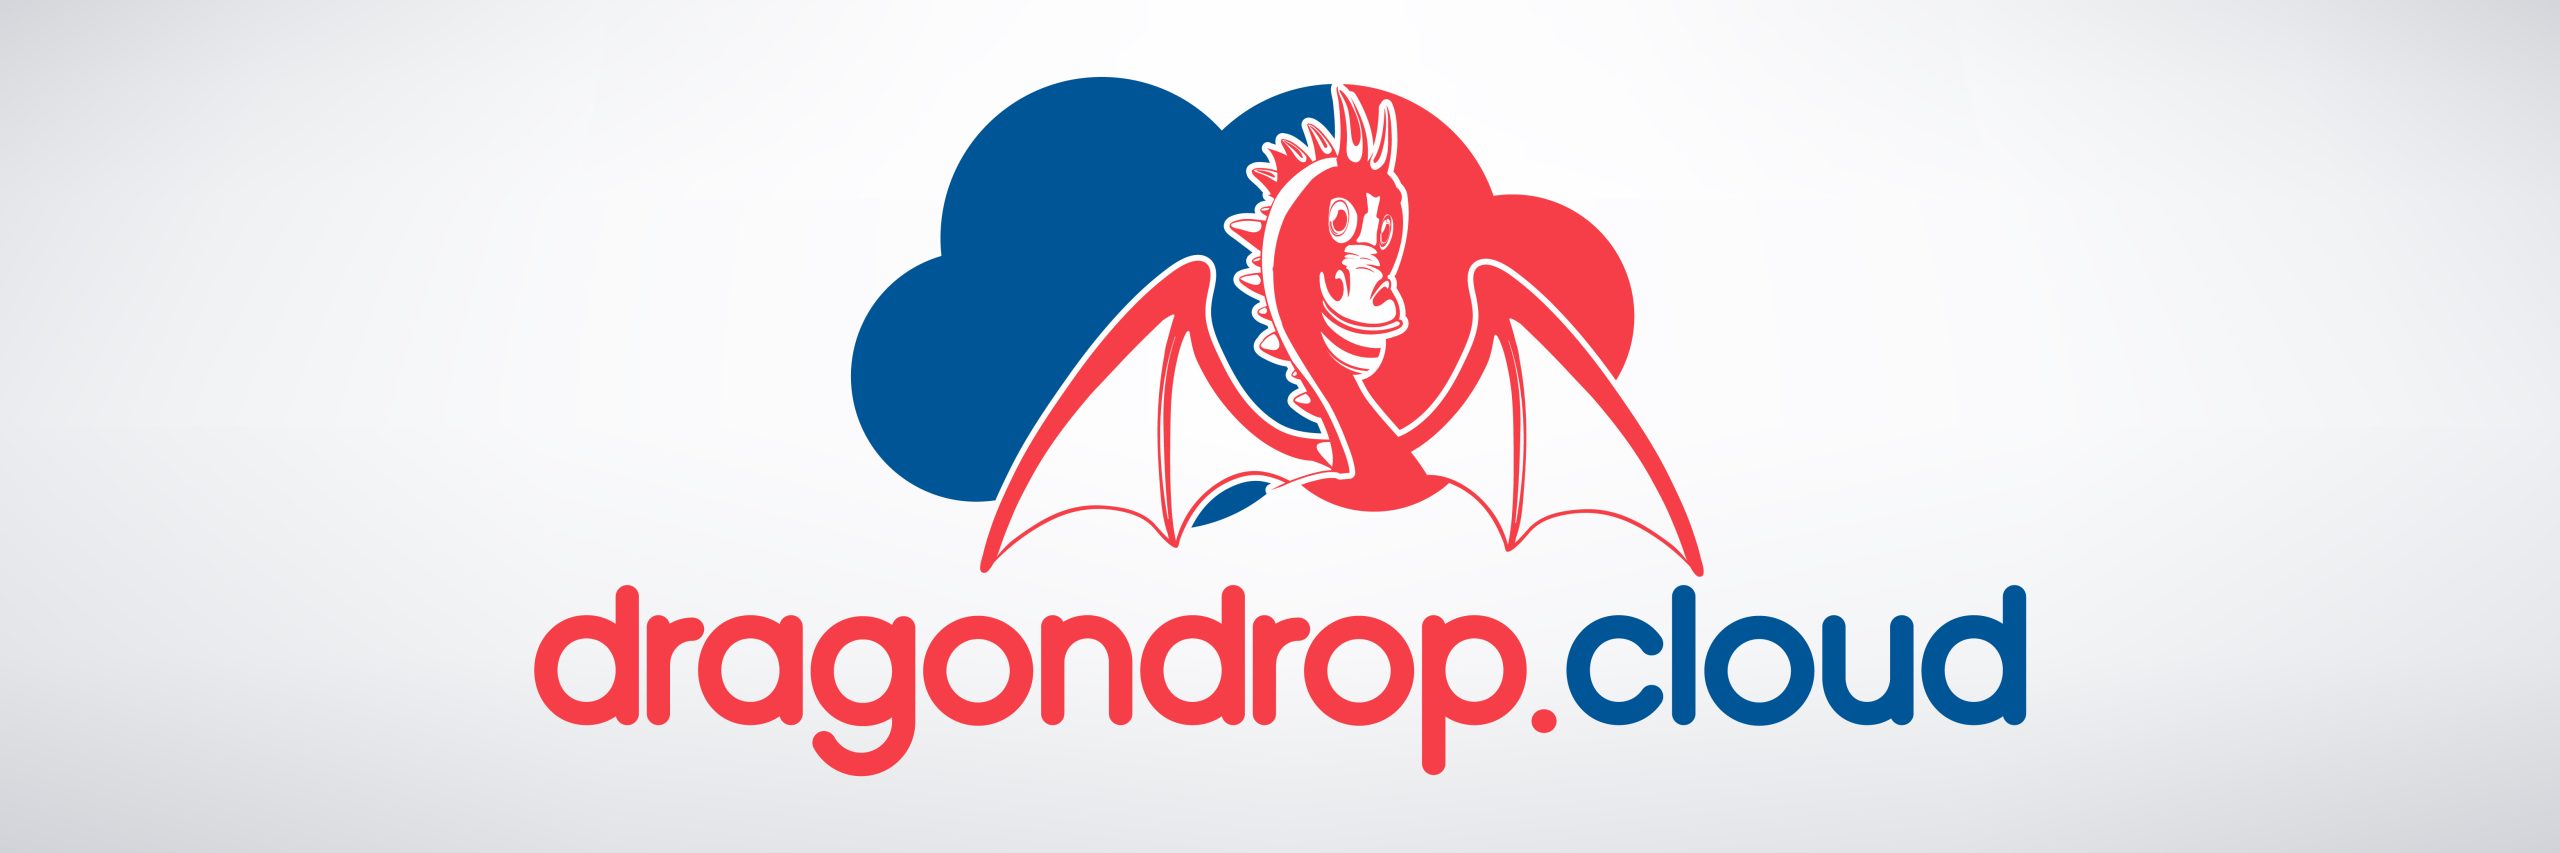 dragondrop.cloud, Inc